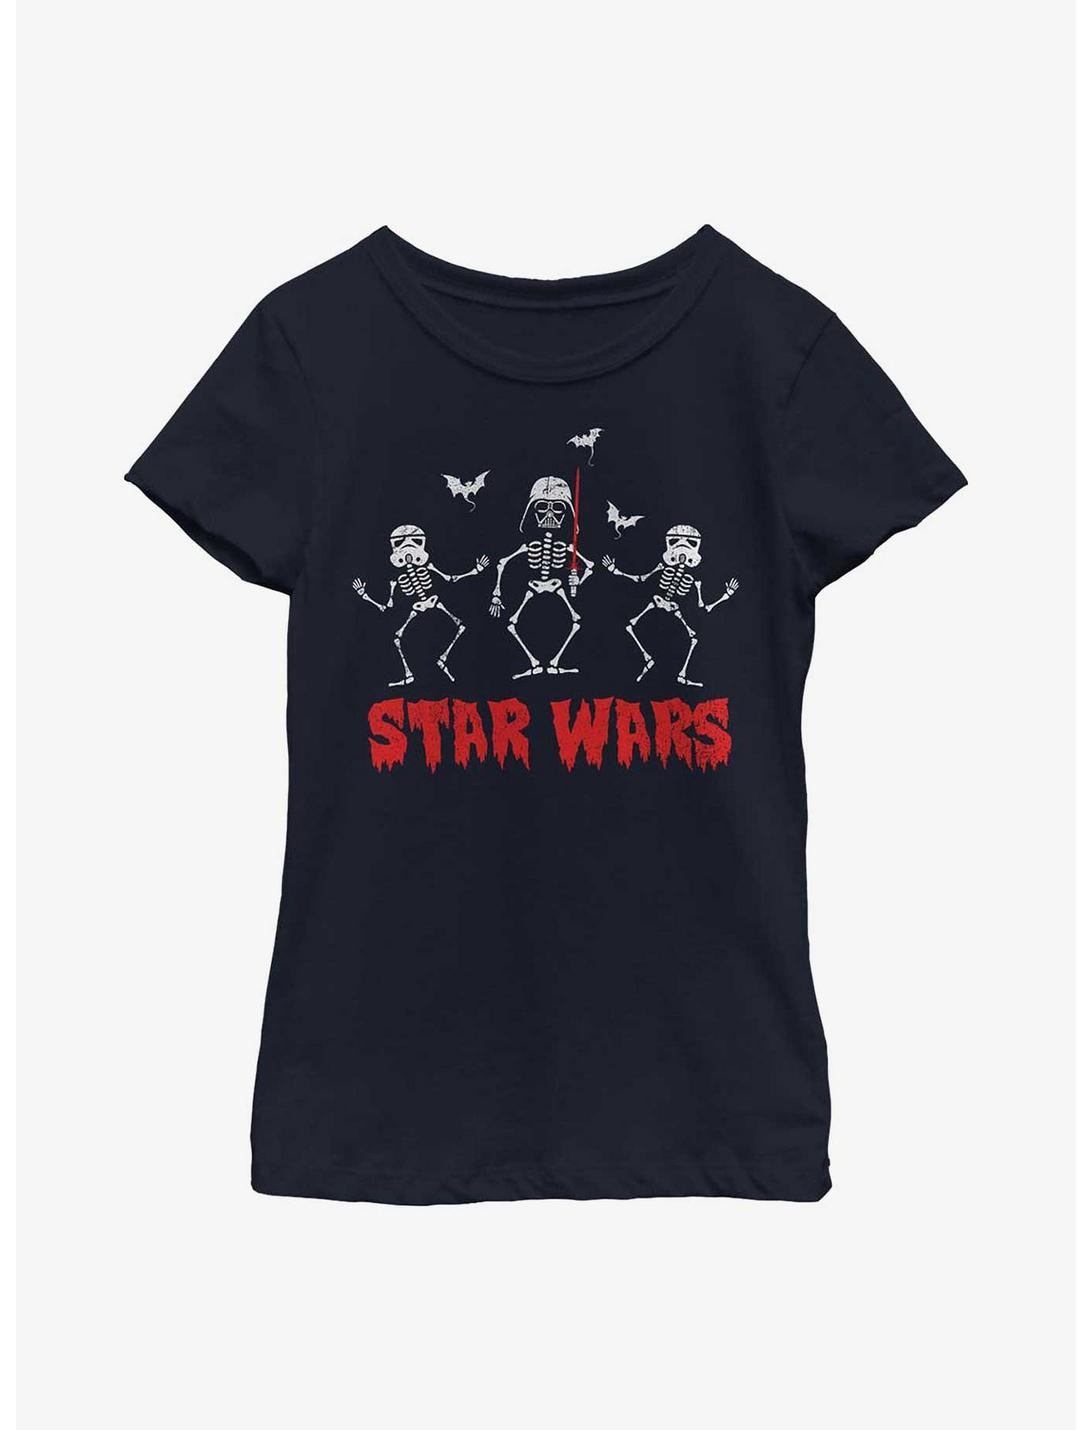 Star Wars Creep Wars Youth Girls T-Shirt, NAVY, hi-res